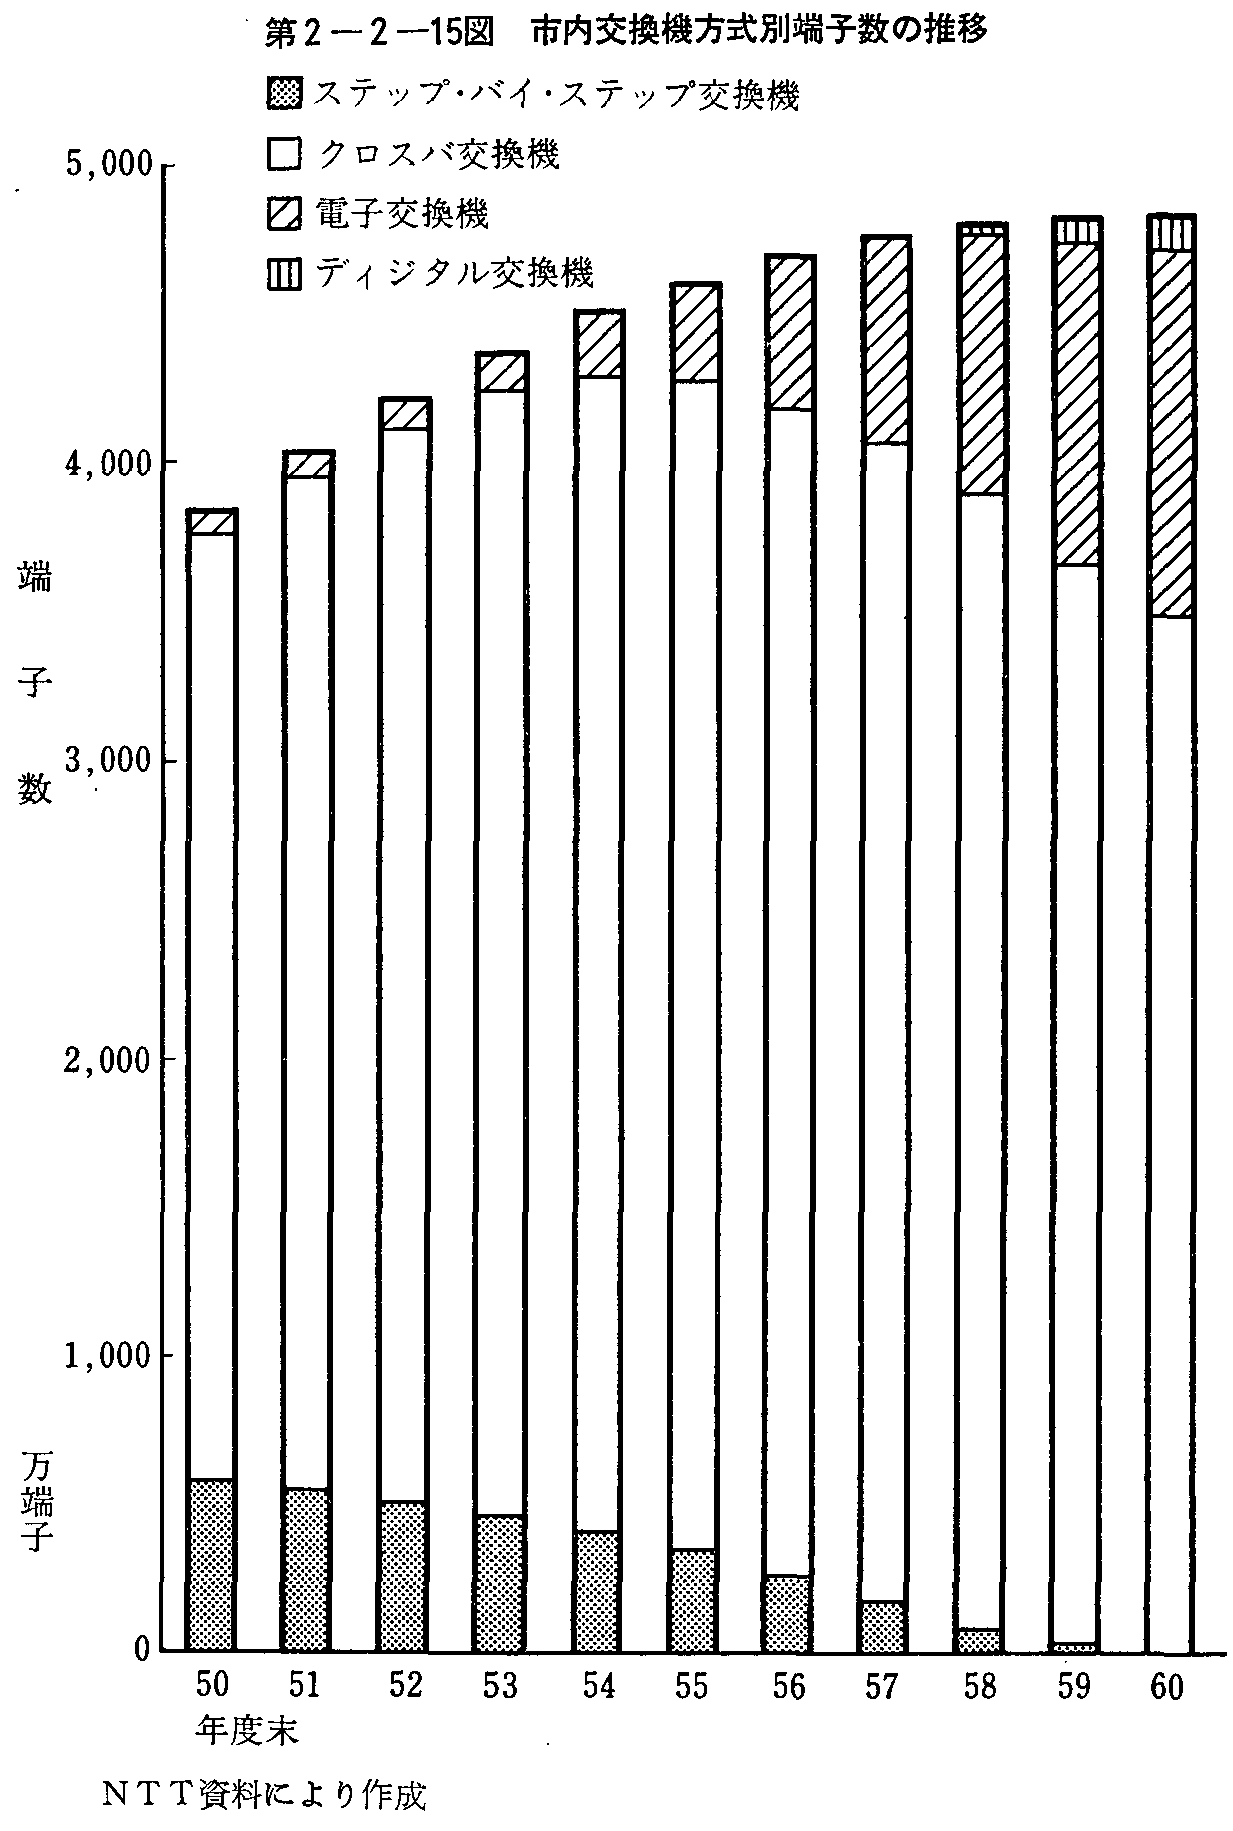 第2-2-15図 市内交換機方式別端子数の推移